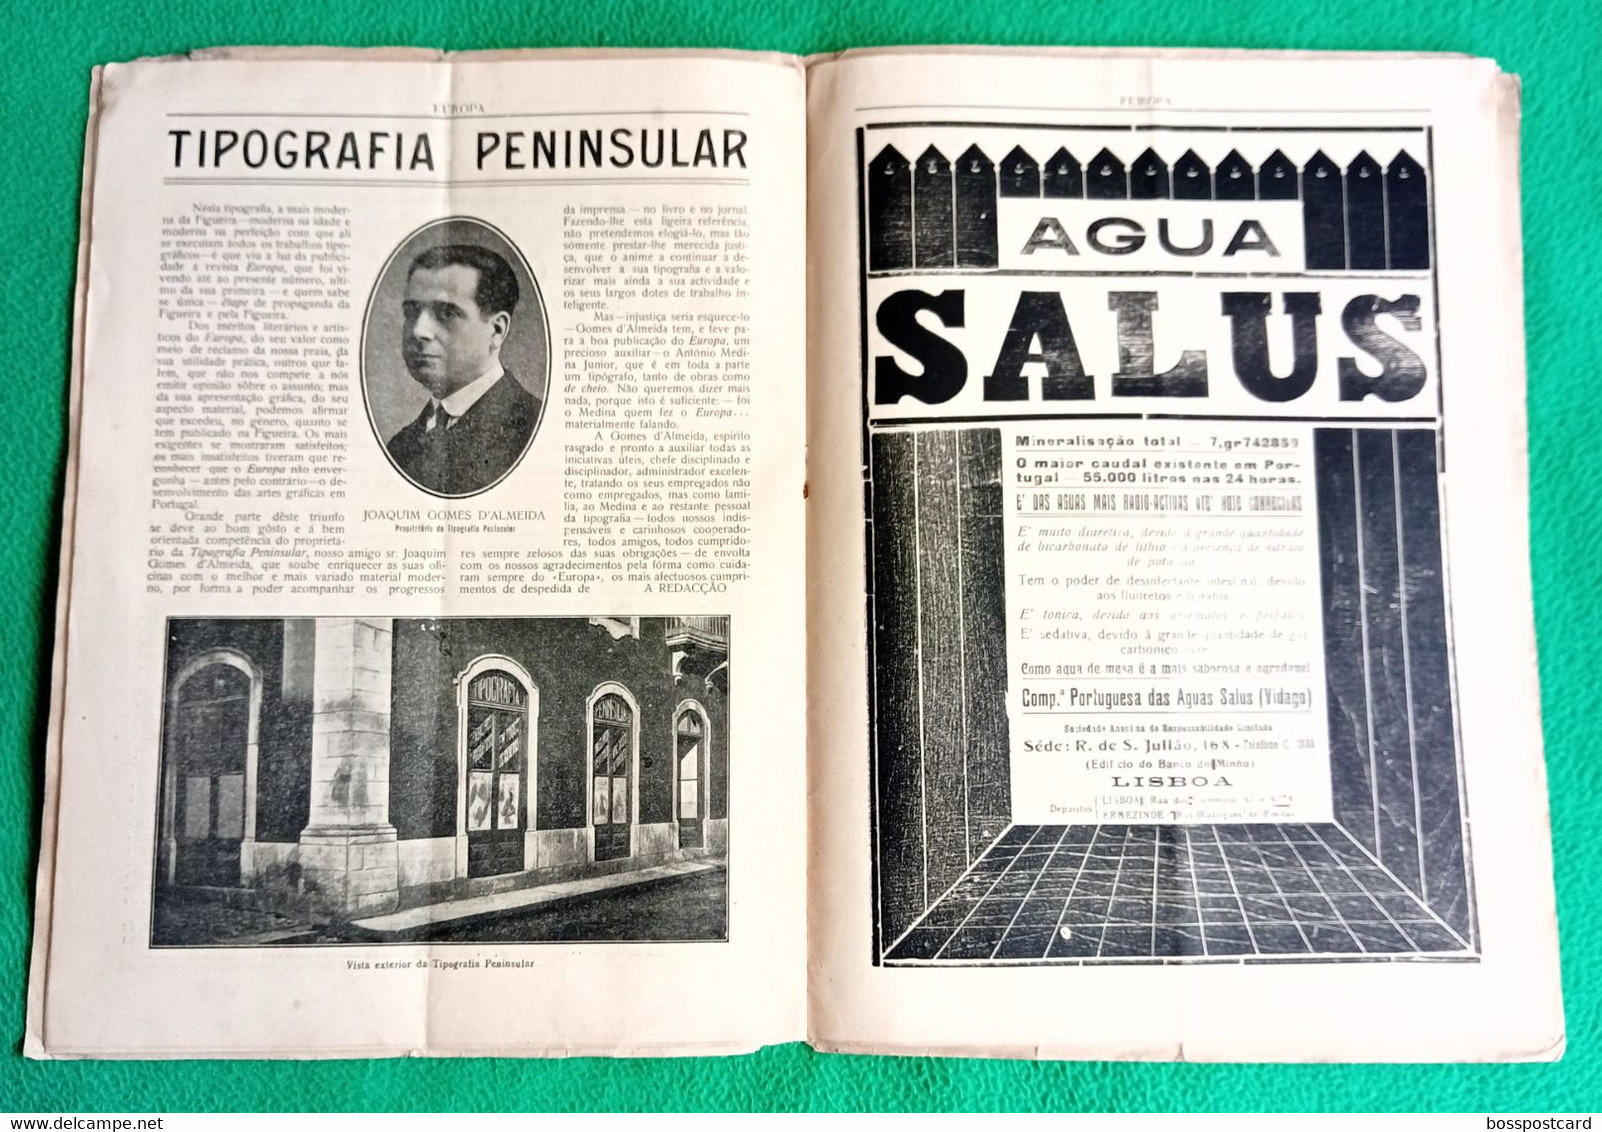 Figueira da Foz - Revista "Europa" Nº 12 de 1 de Outubro de 1925 - Publicidade - Comercial. Coimbra. Portugal.